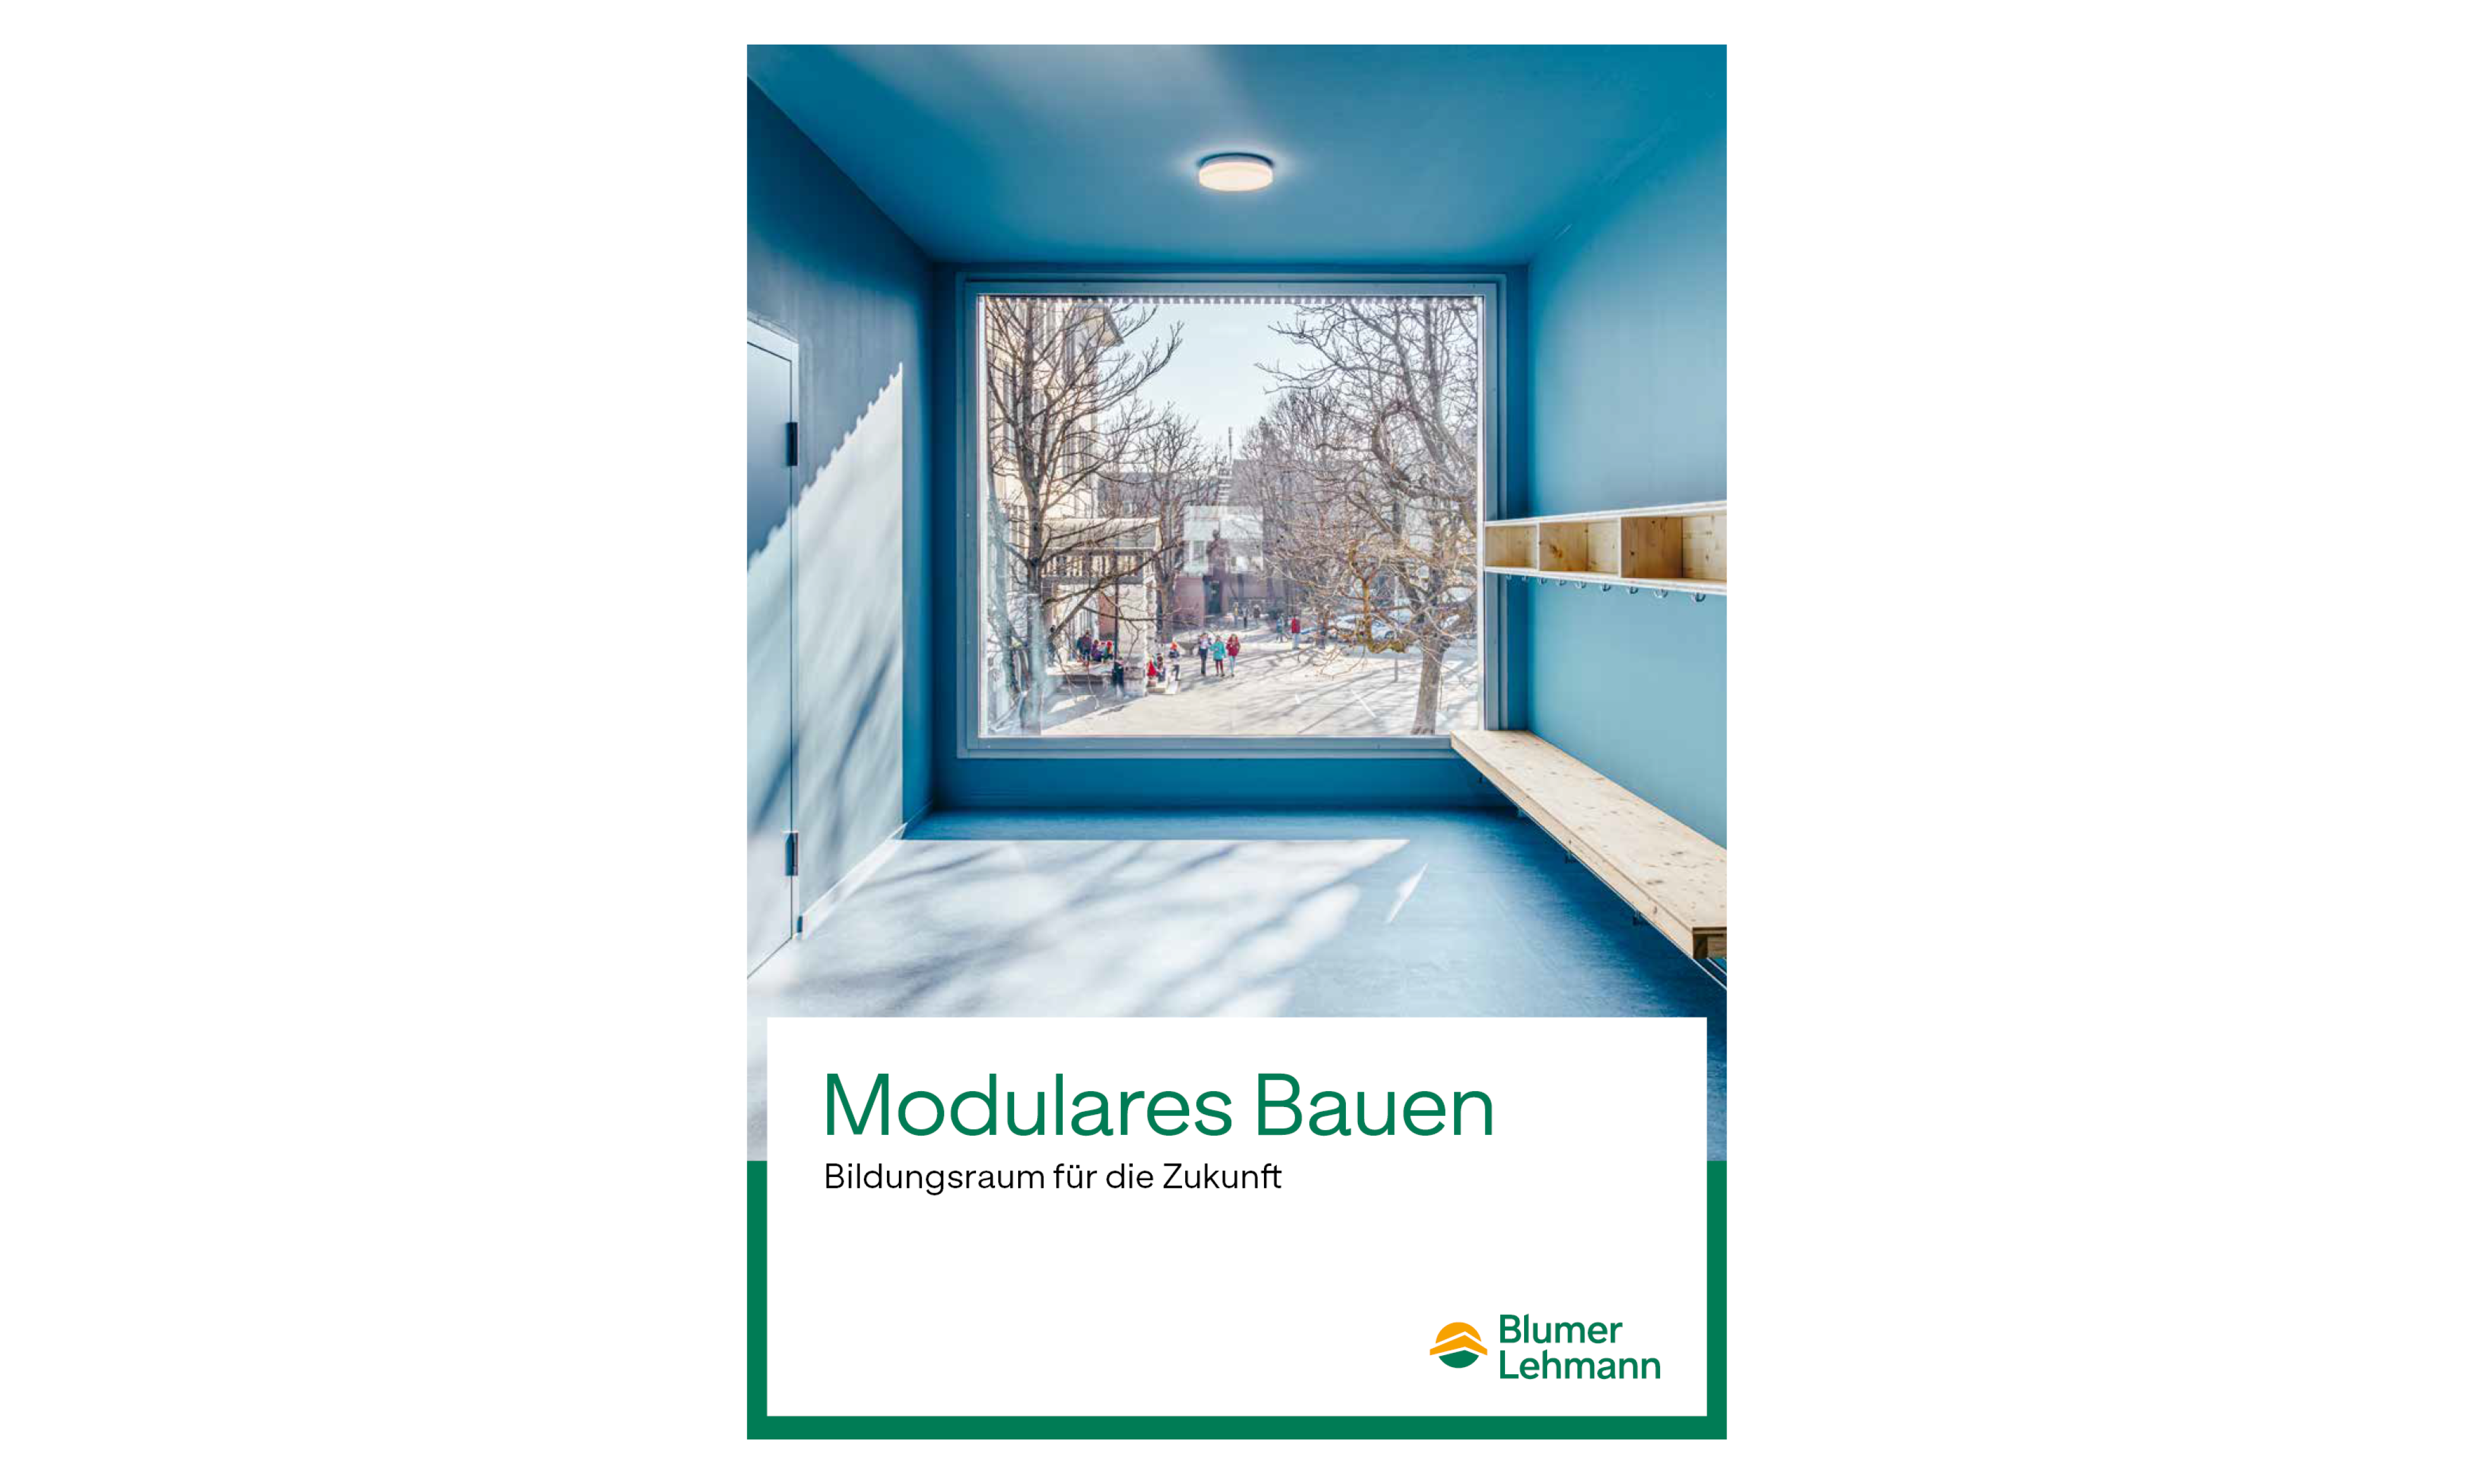 Broschüre Modulares Bauen Bildungsraum für die Zukunft von Blumer Lehmann